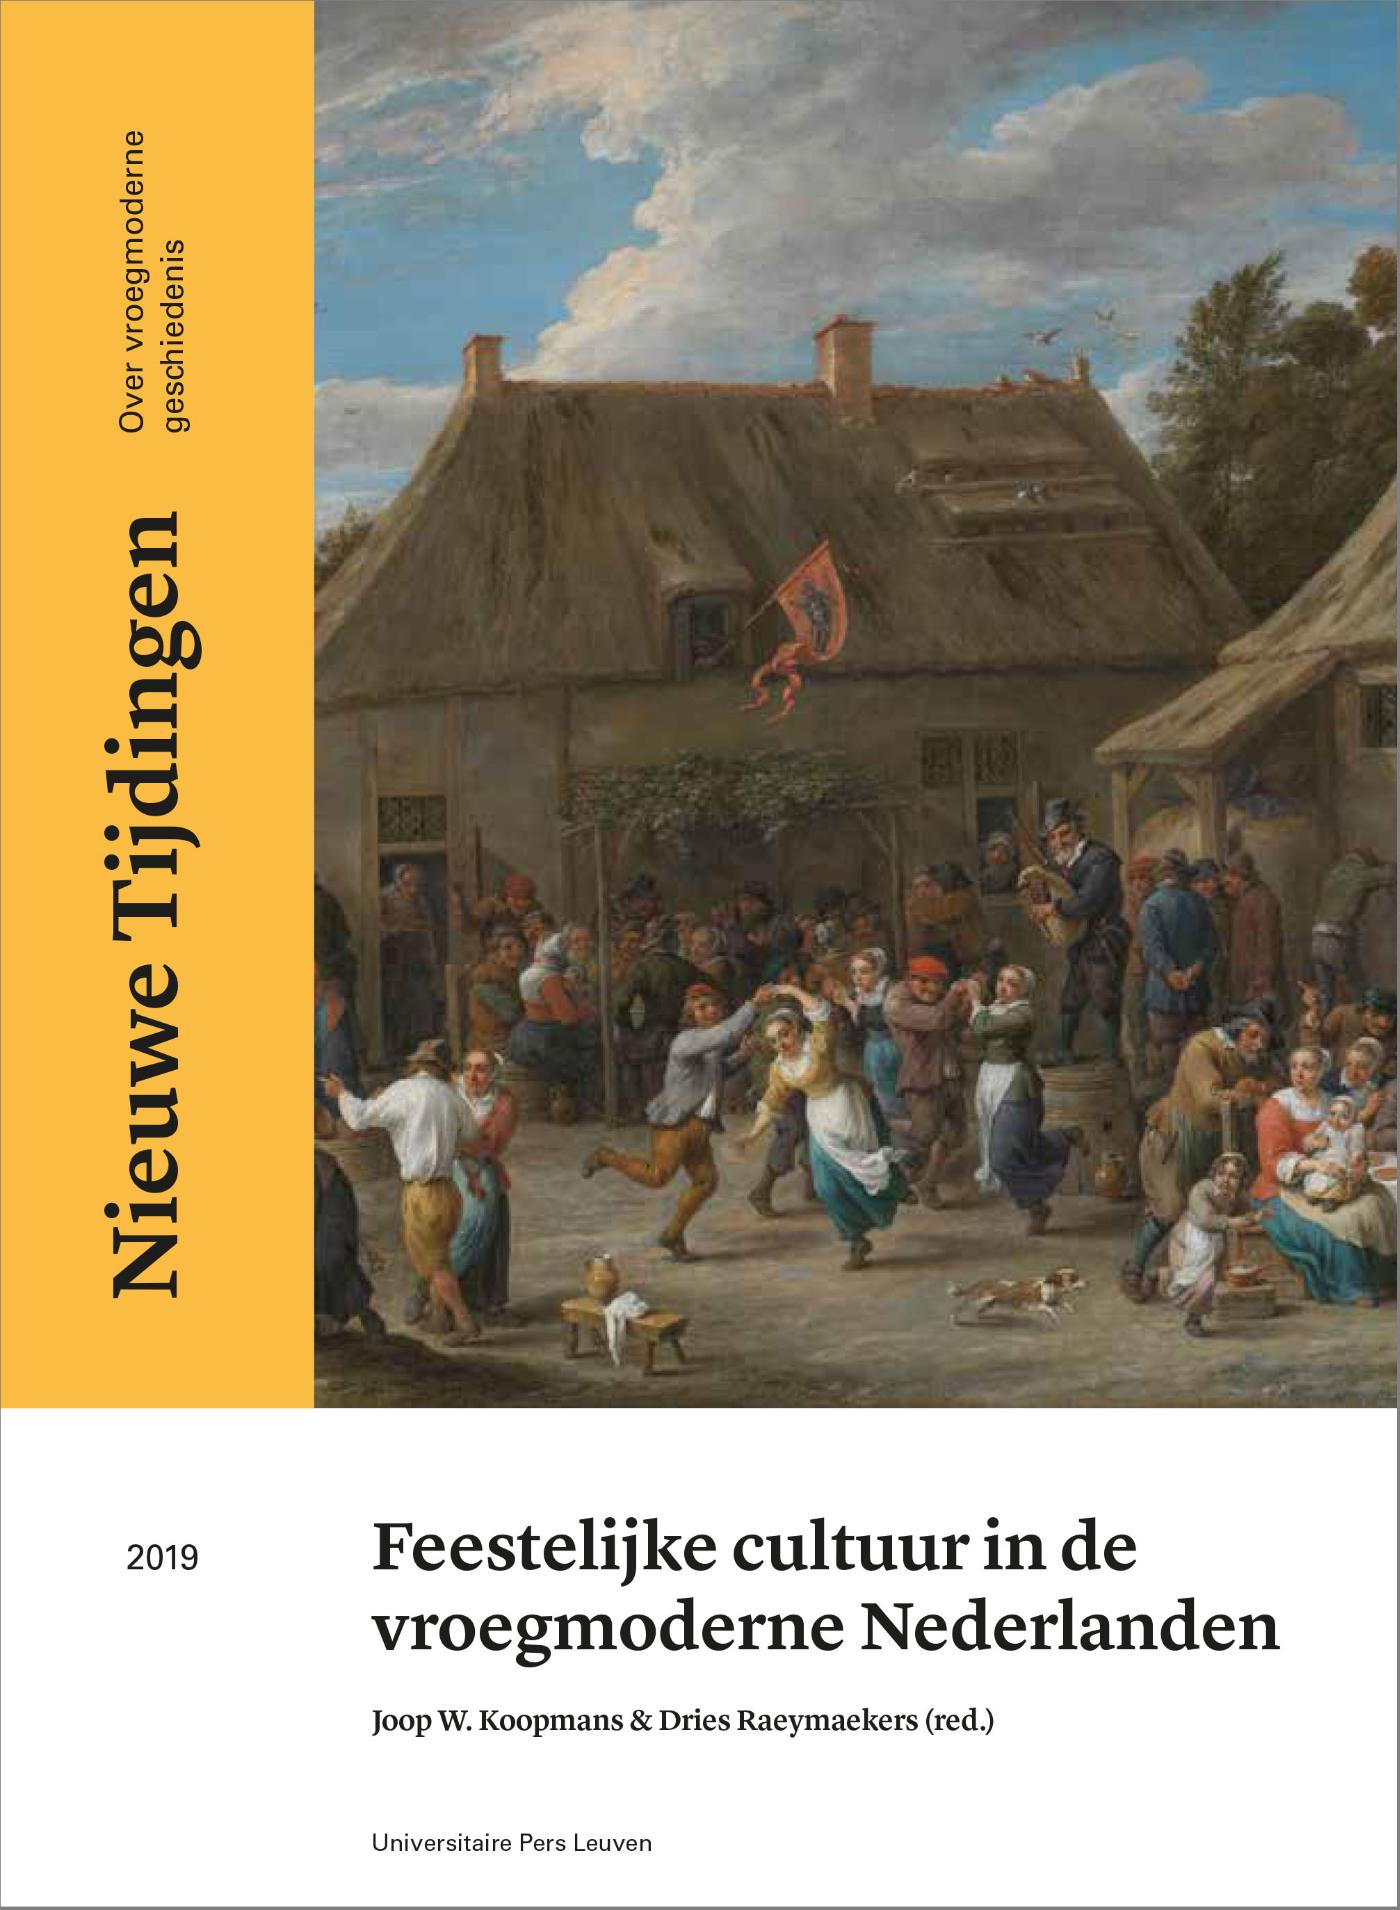 Feestelijke cultuur in de vroegmoderne Nederlanden